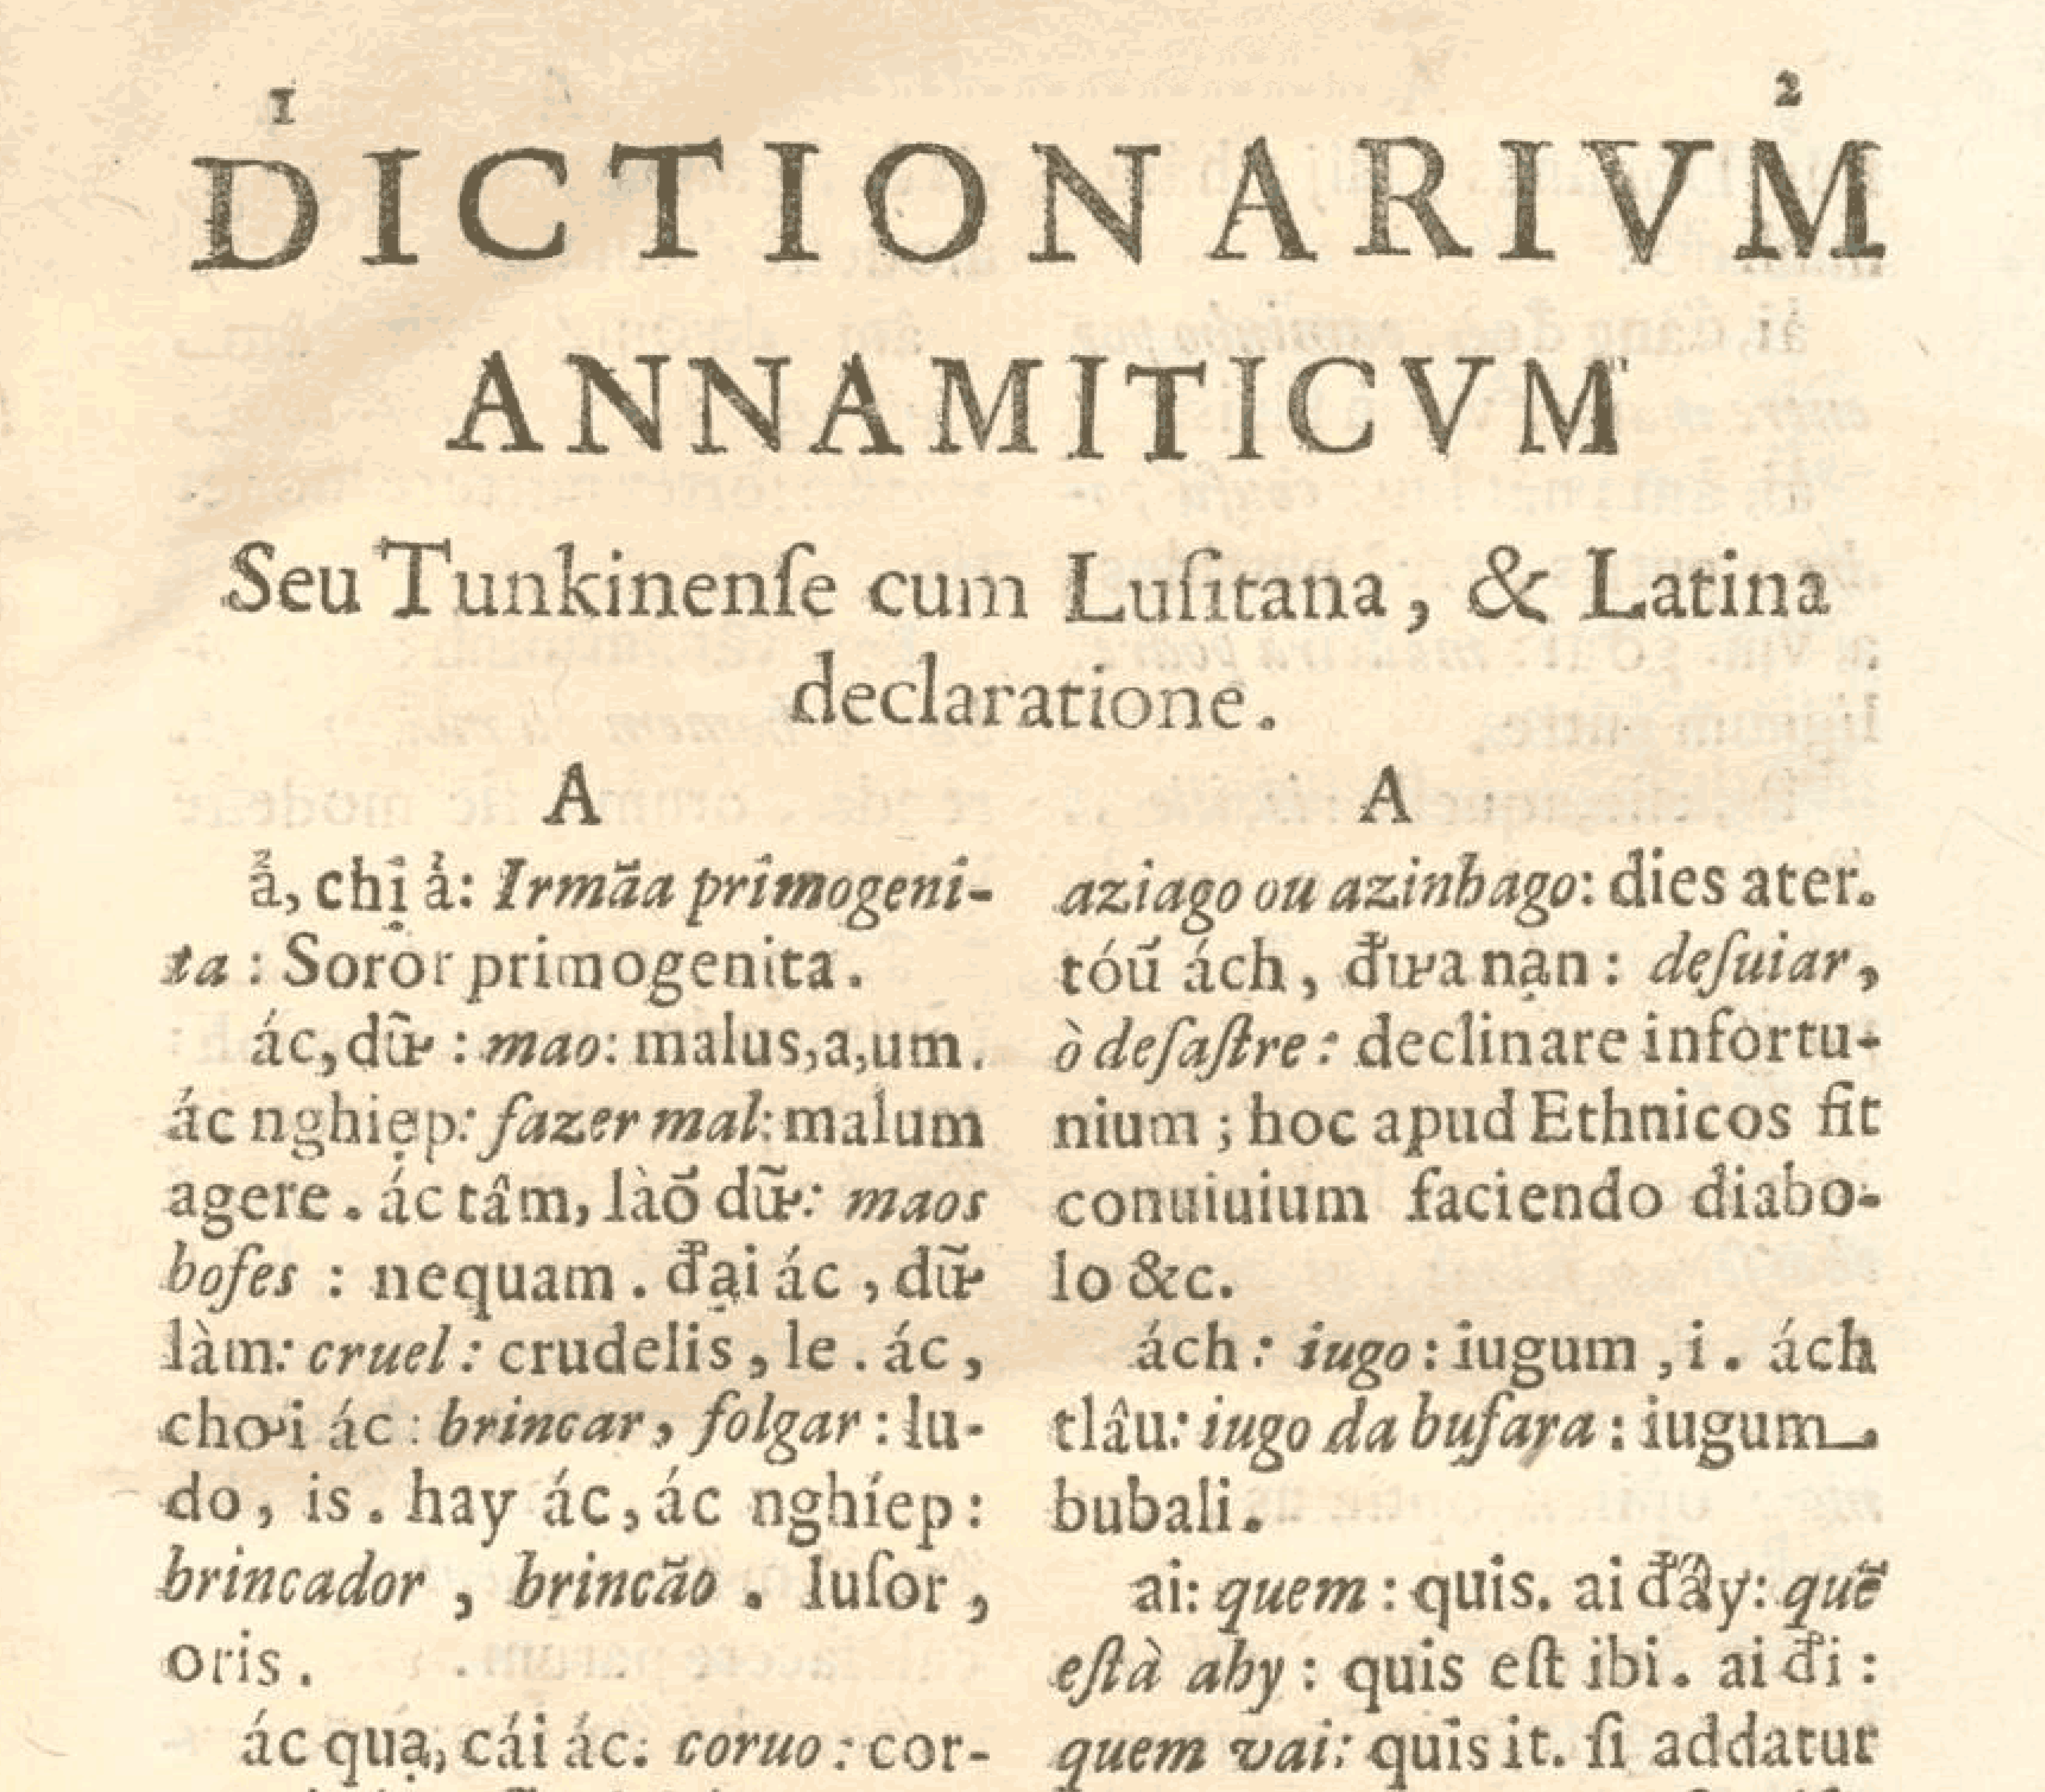 Dictionarium Annamiticum Lusitanum et Latinum